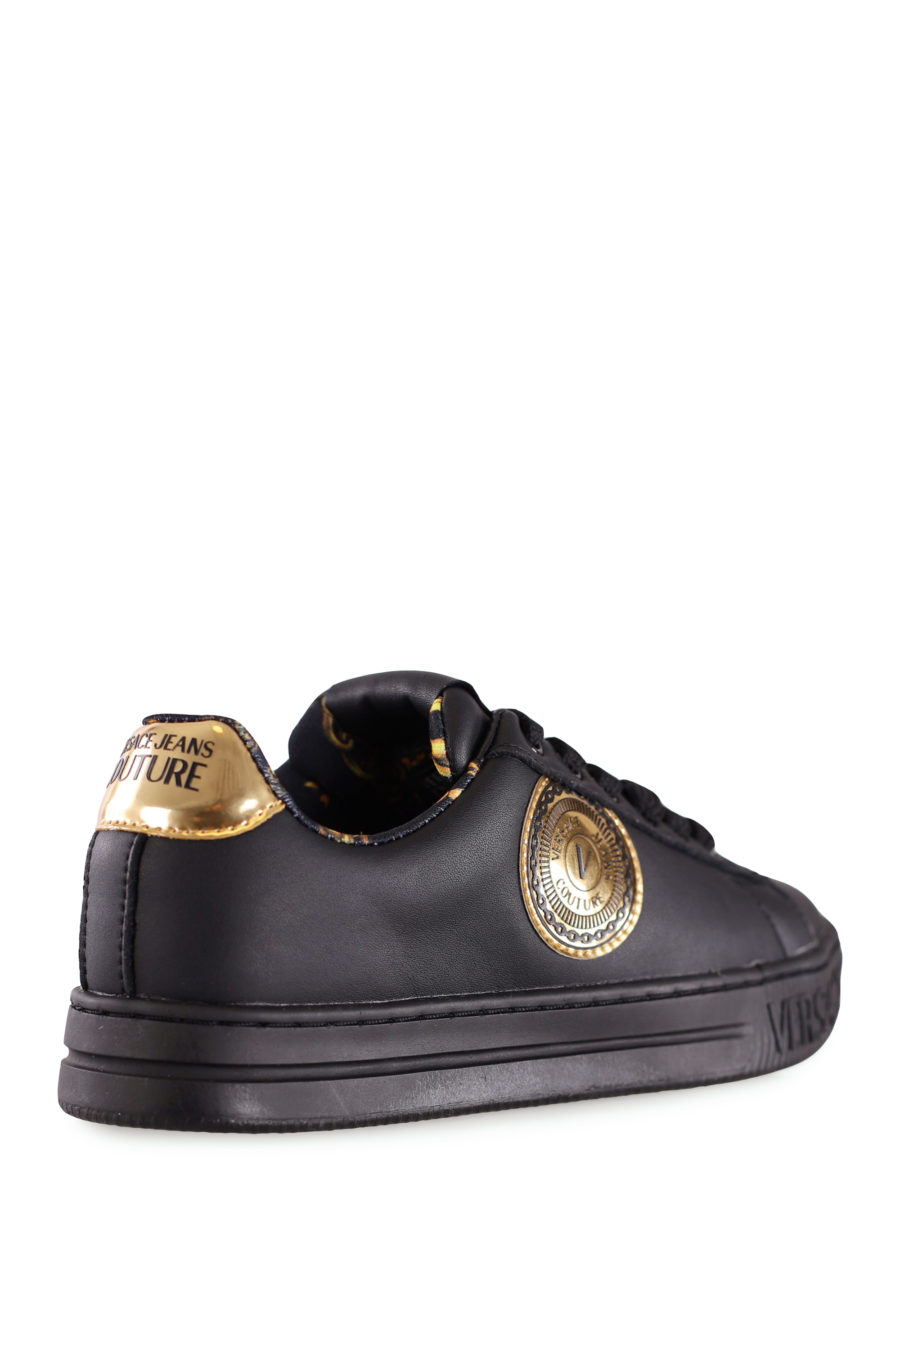 Zapatillas negras con logo dorado - IMG 8204 copia